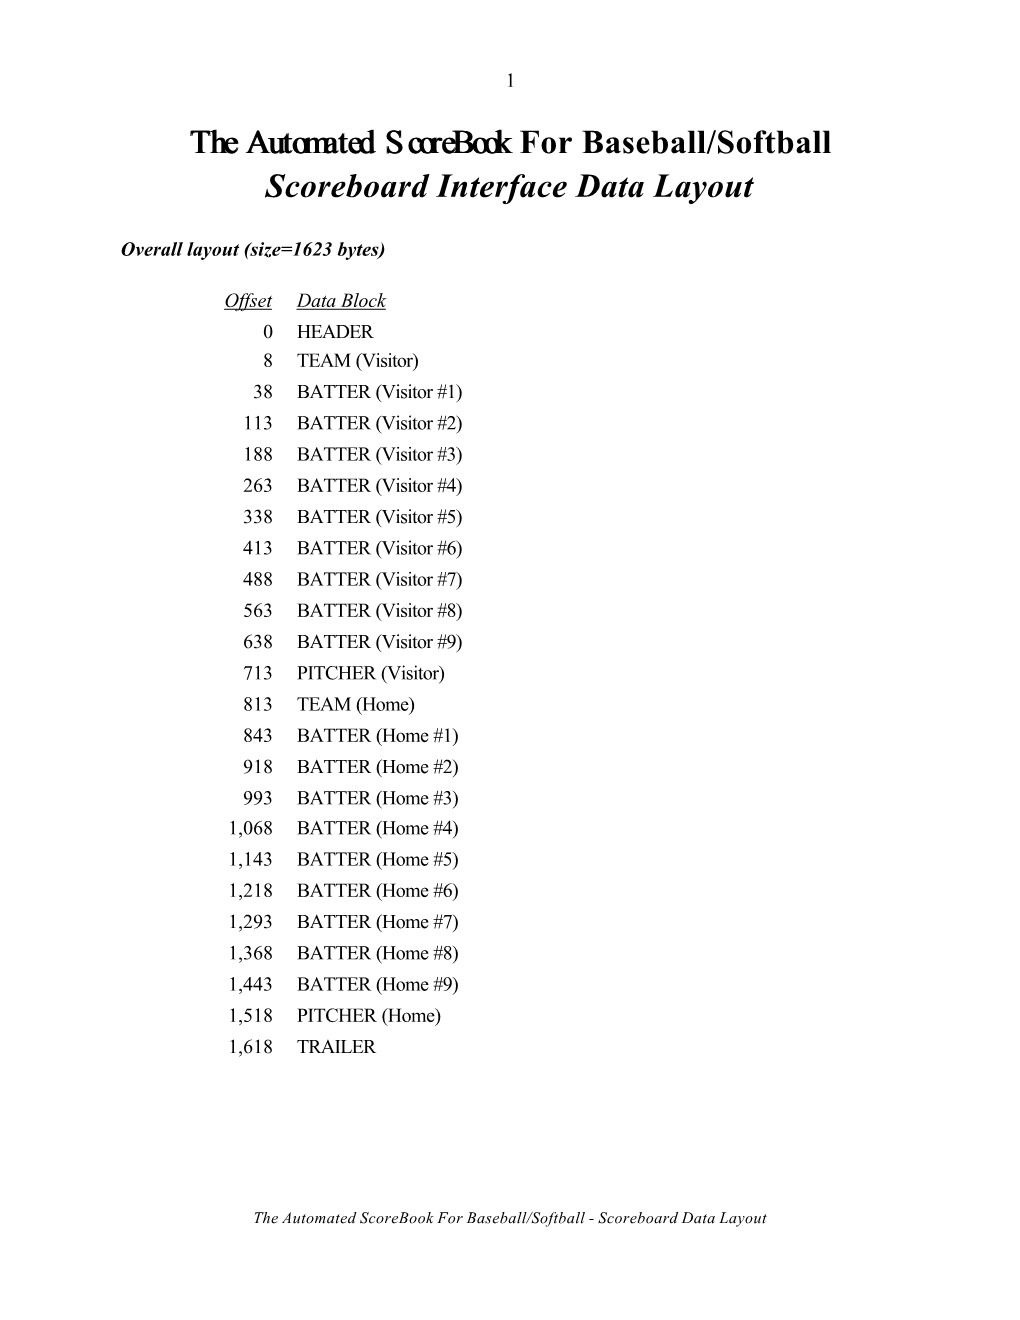 The Automated Scorebook for Baseball/Softball Scoreboard Interface Data Layout